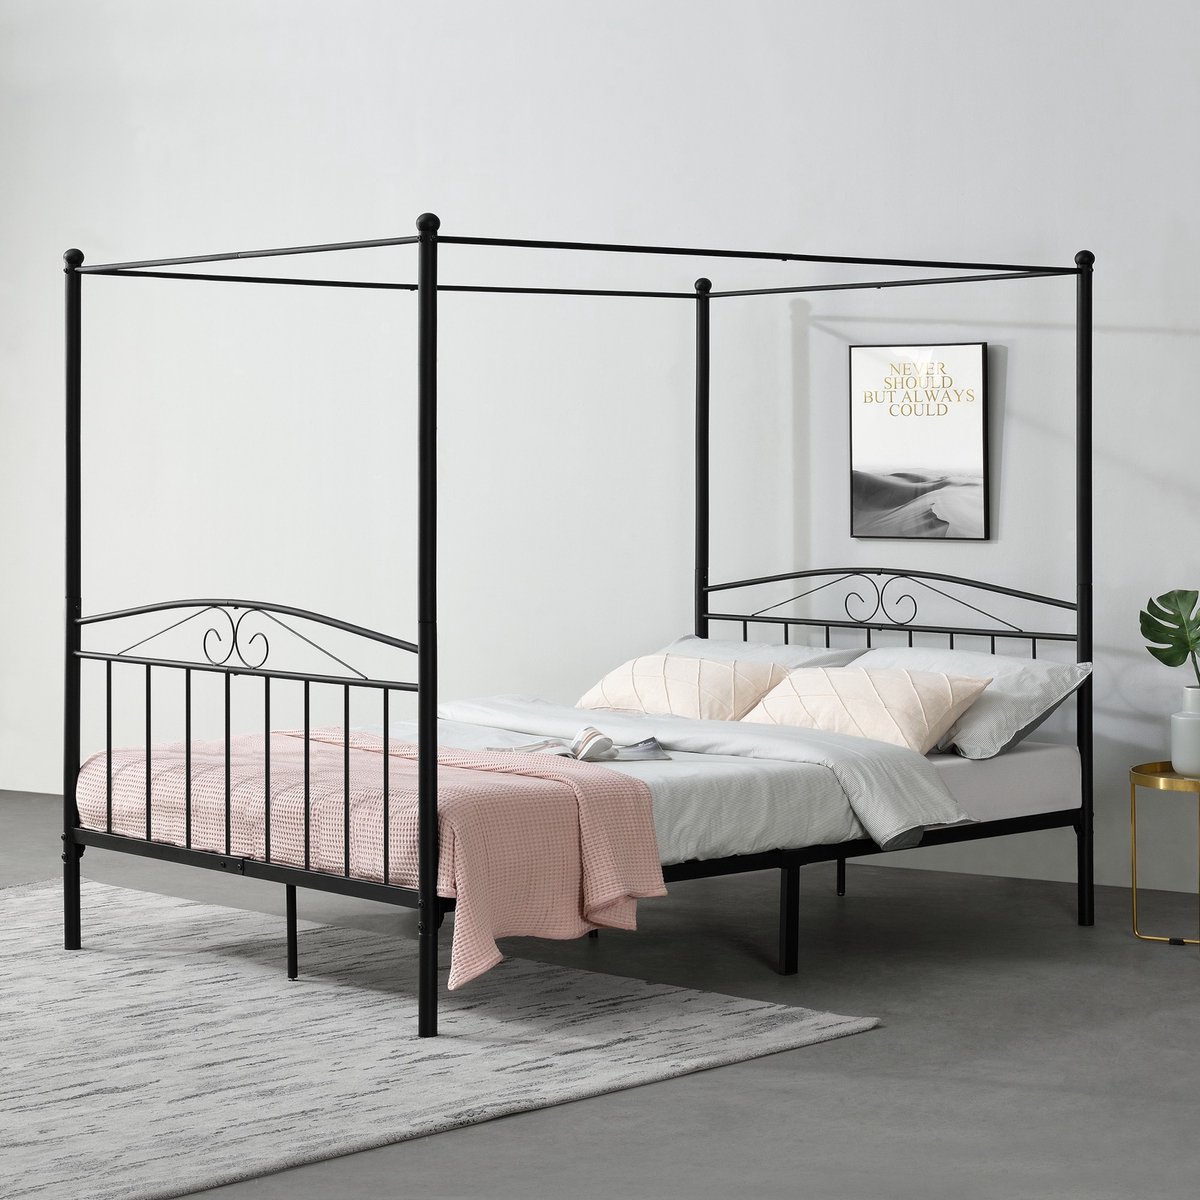 Metalen hemelbed Jetty - Zwart - Met bedbodem - 180x200 cm - Modern design